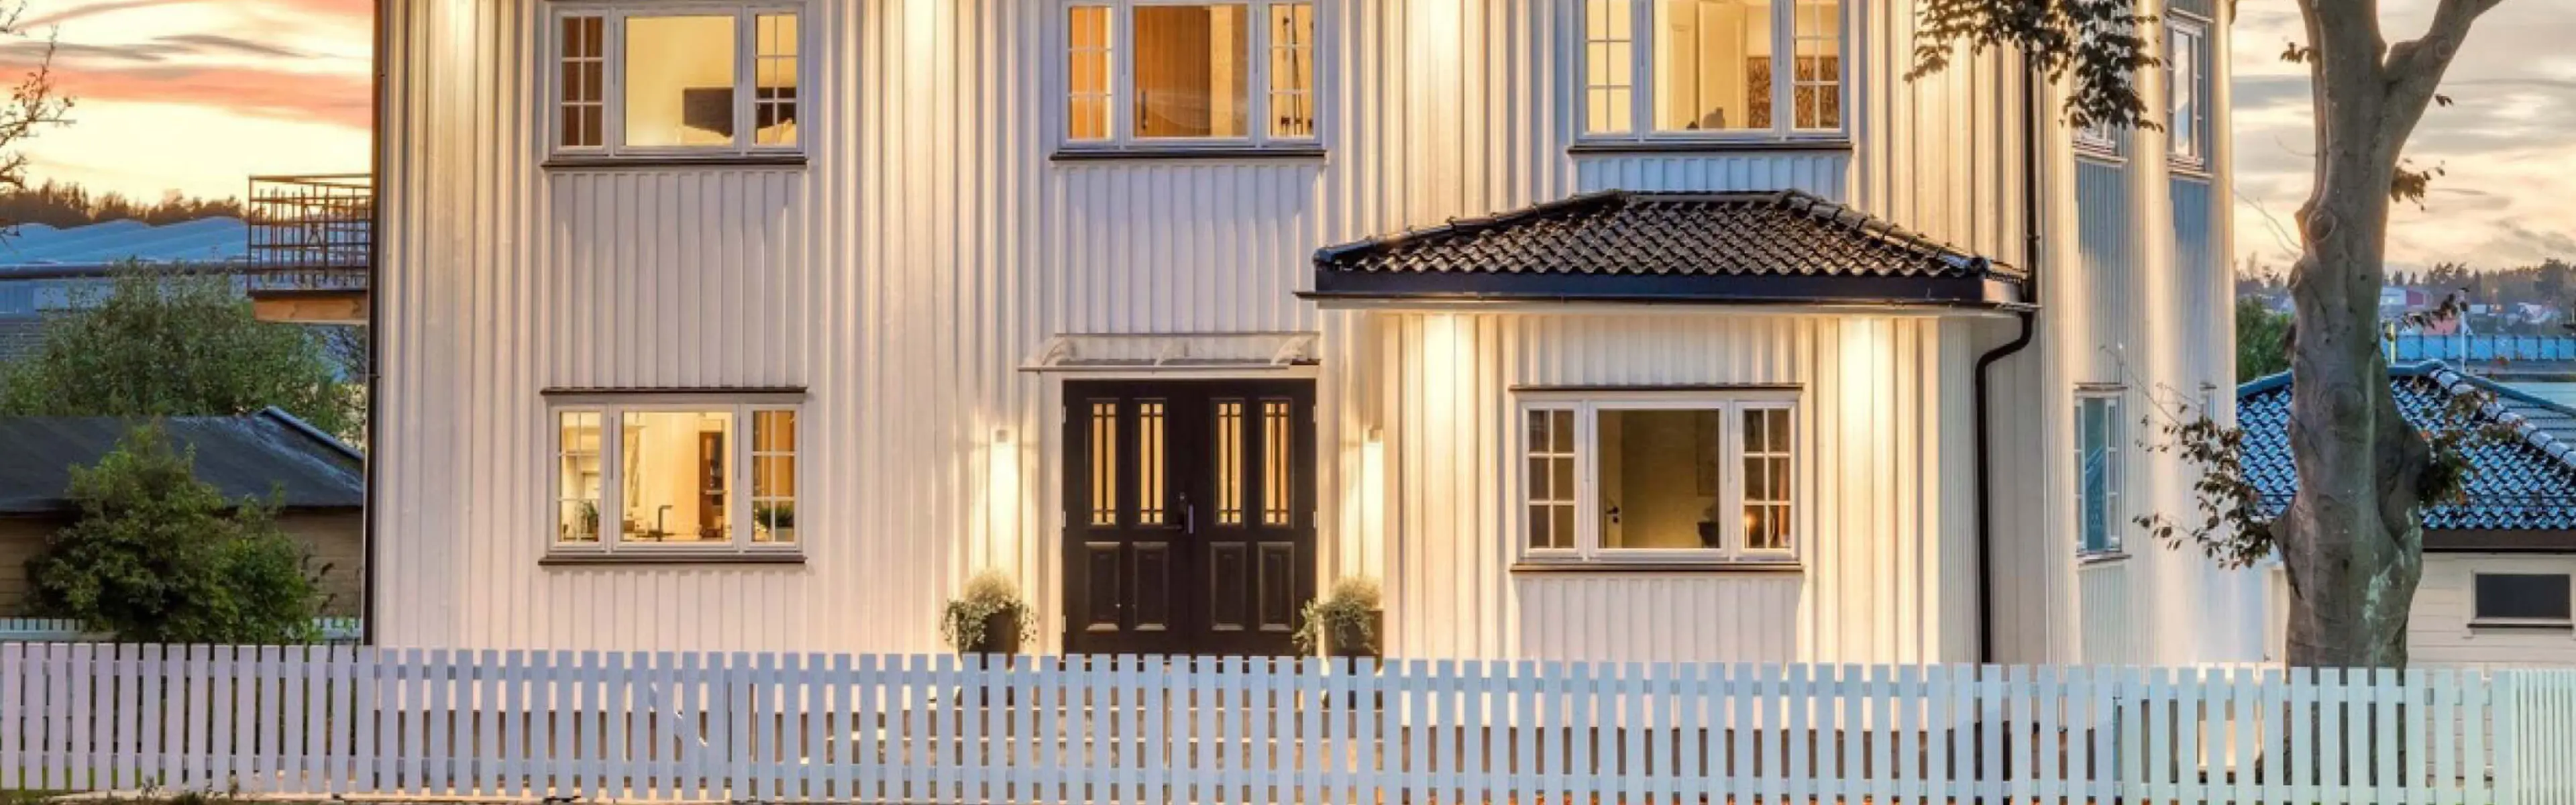 Hvitt hus med stakittgjerde og klassisk dobbel ytterdør i sort med profil og glass med sprosser.